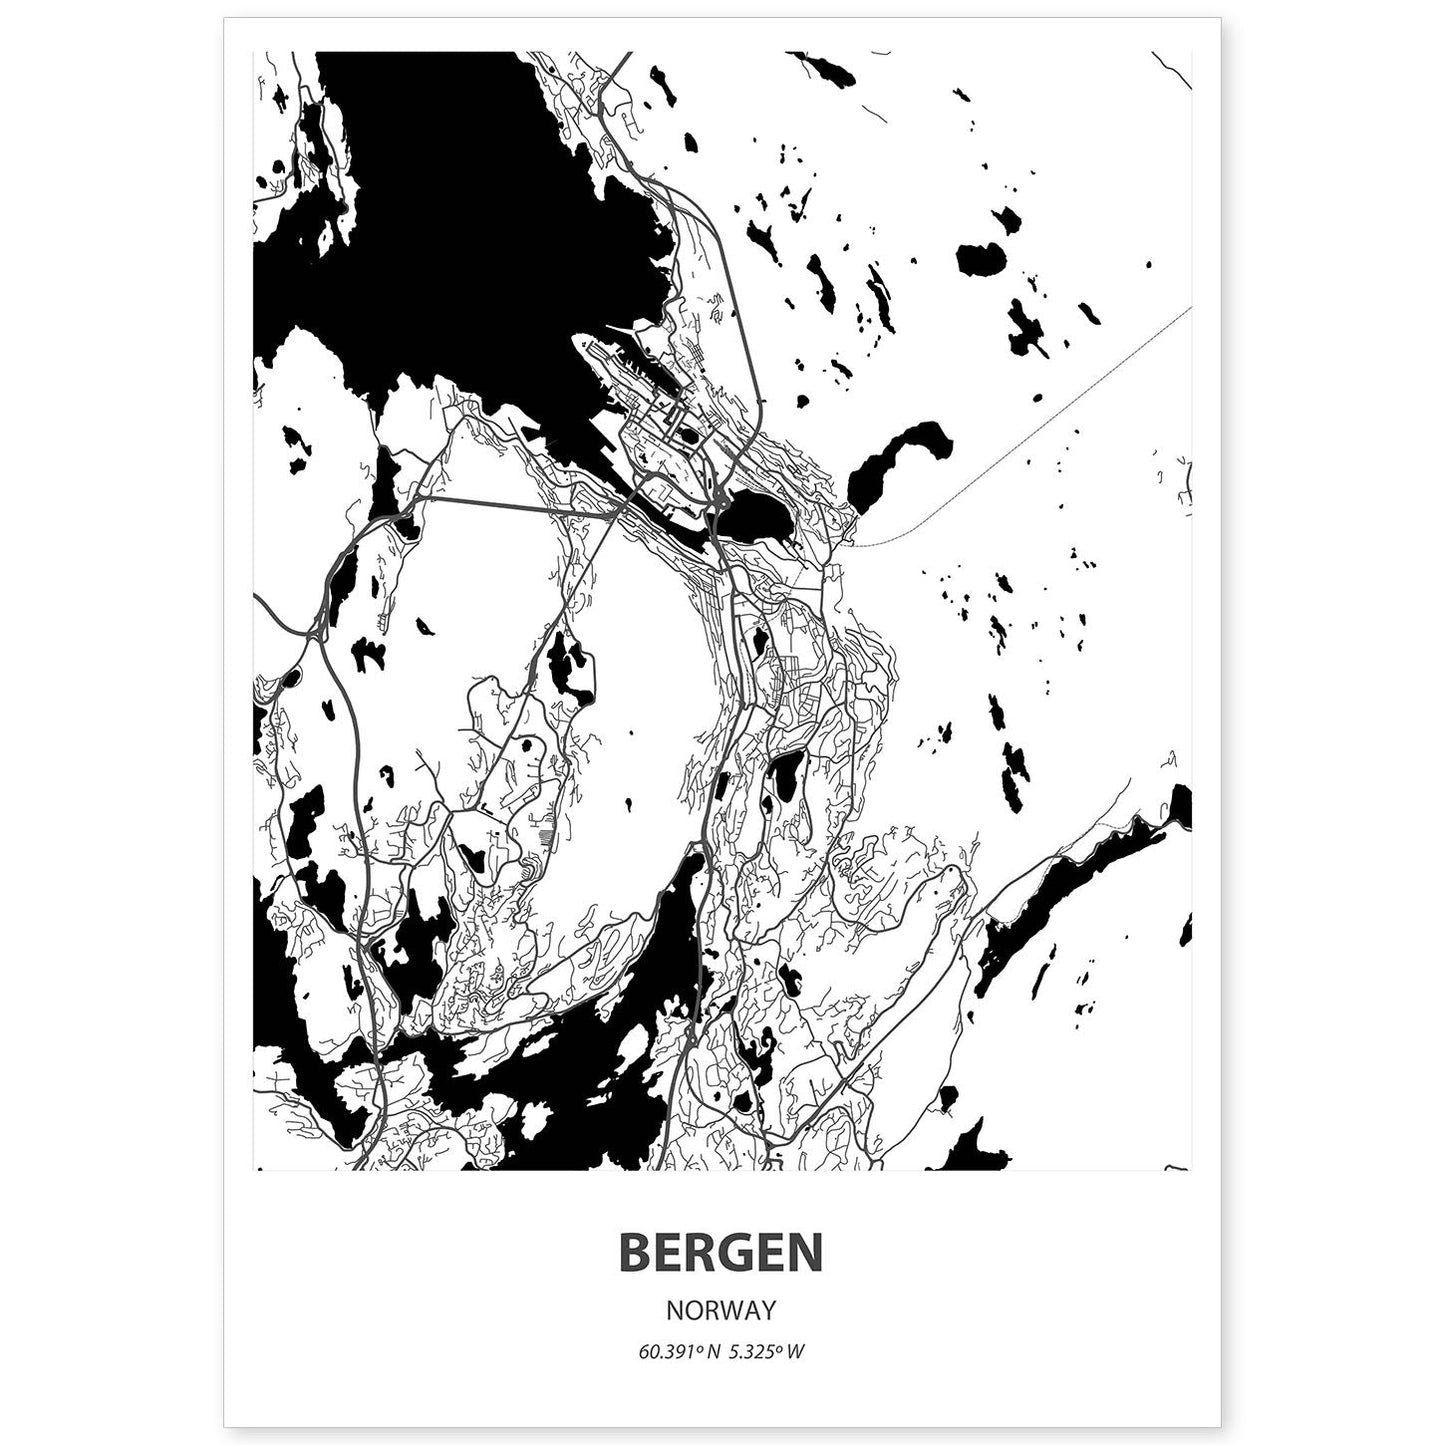 Poster con mapa de Bergen - Noruega. Láminas de ciudades del norte de Europa con mares y ríos en color negro.-Artwork-Nacnic-A4-Sin marco-Nacnic Estudio SL